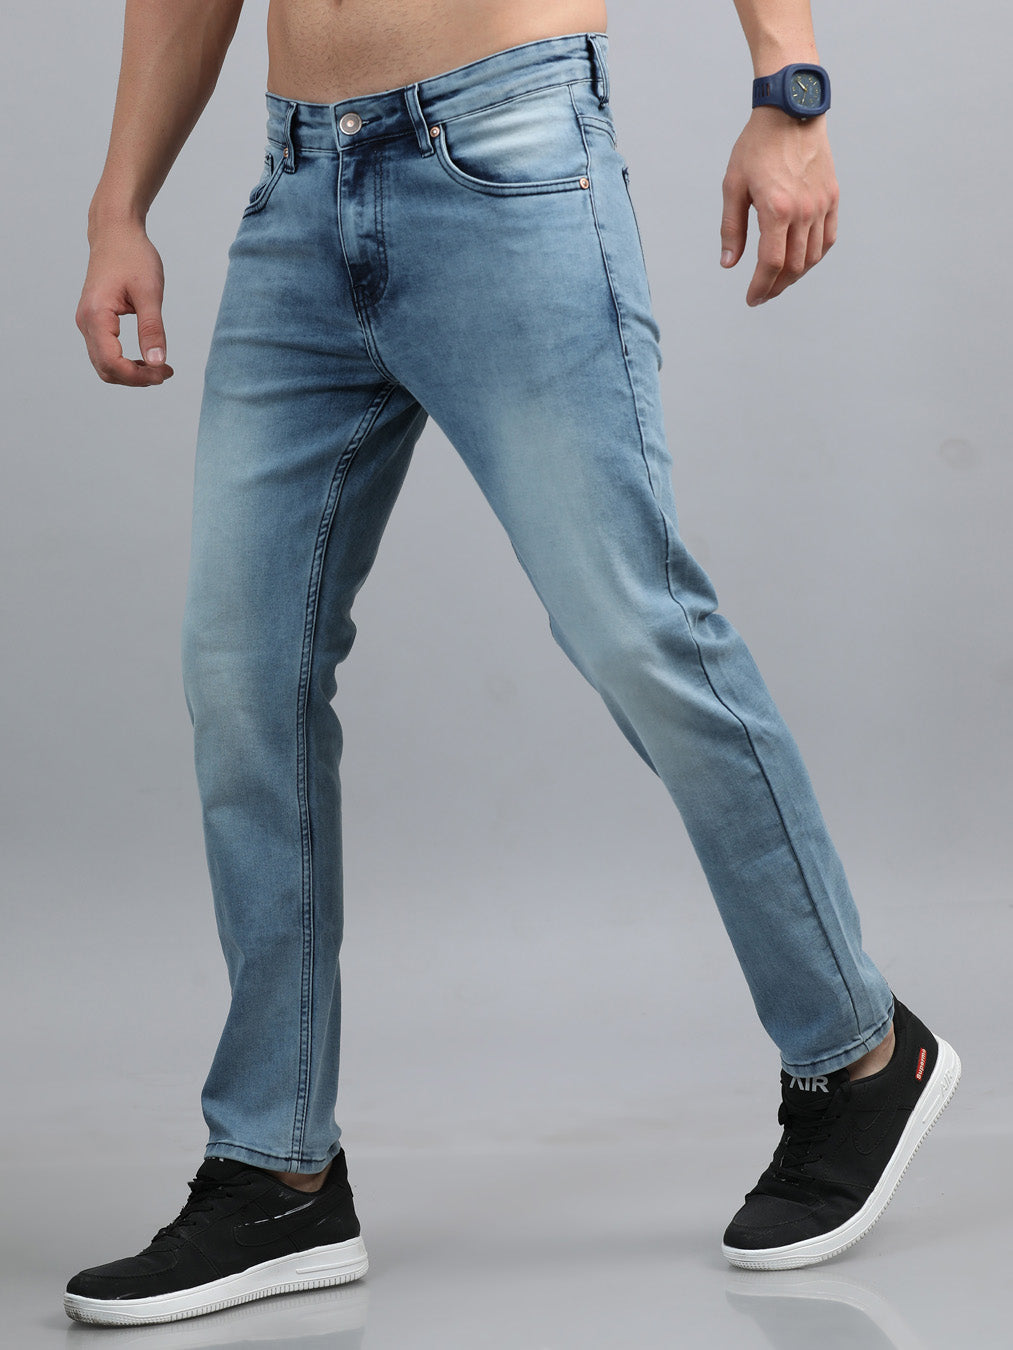 Light Blue Slim Fit Jeans By NoLogo | NL-DESJ-003 | Cilory.com